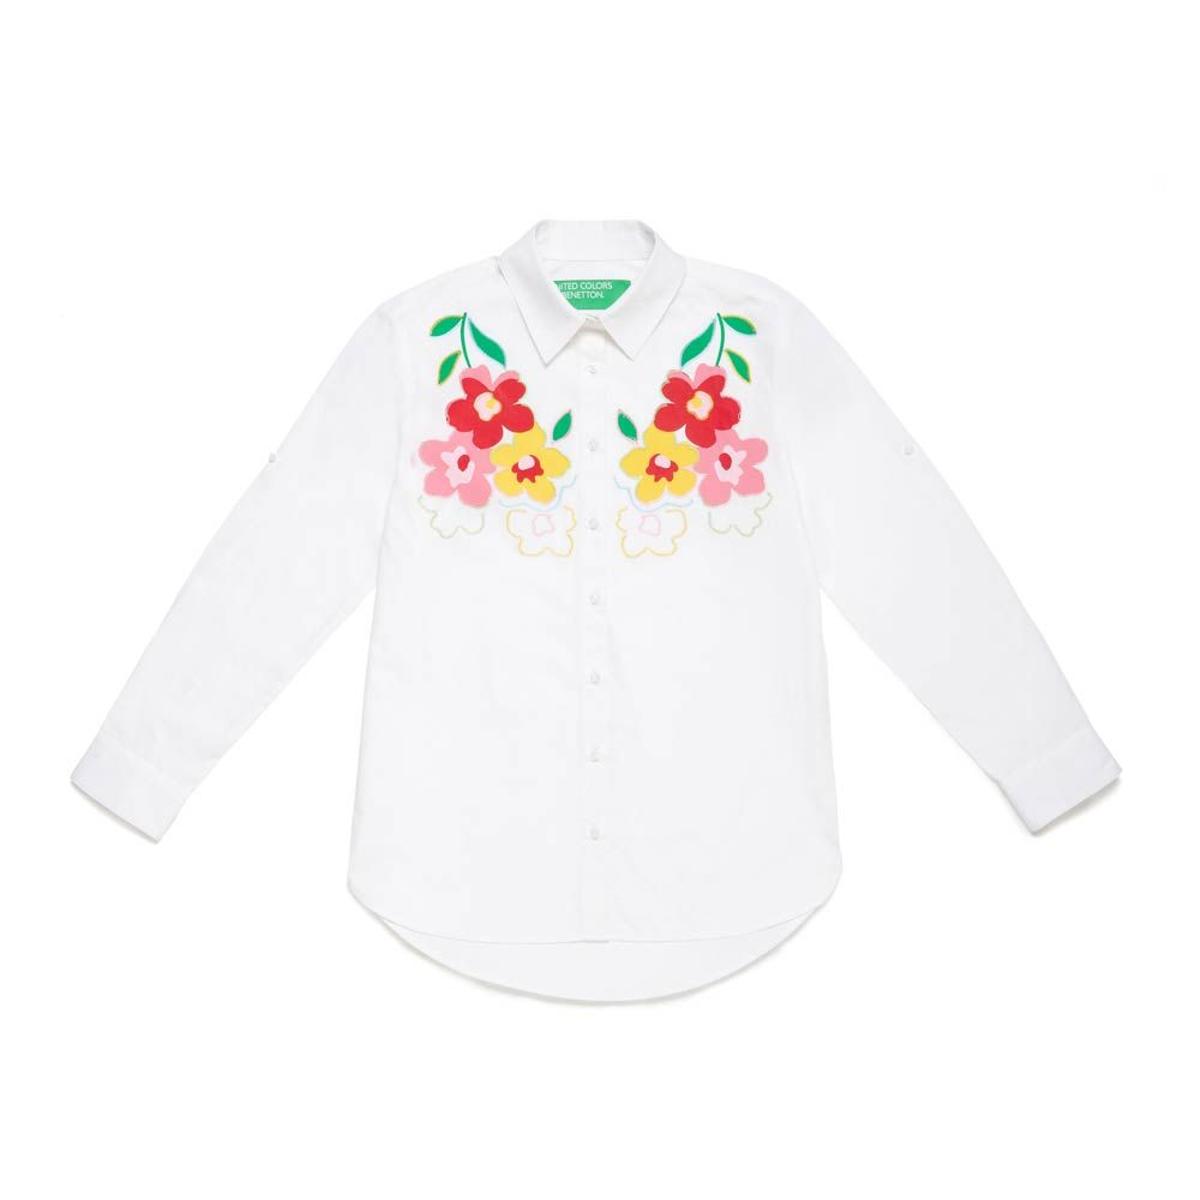 Camisa con flores en el pecho de Benetton. (Precio: 49,95 euros)